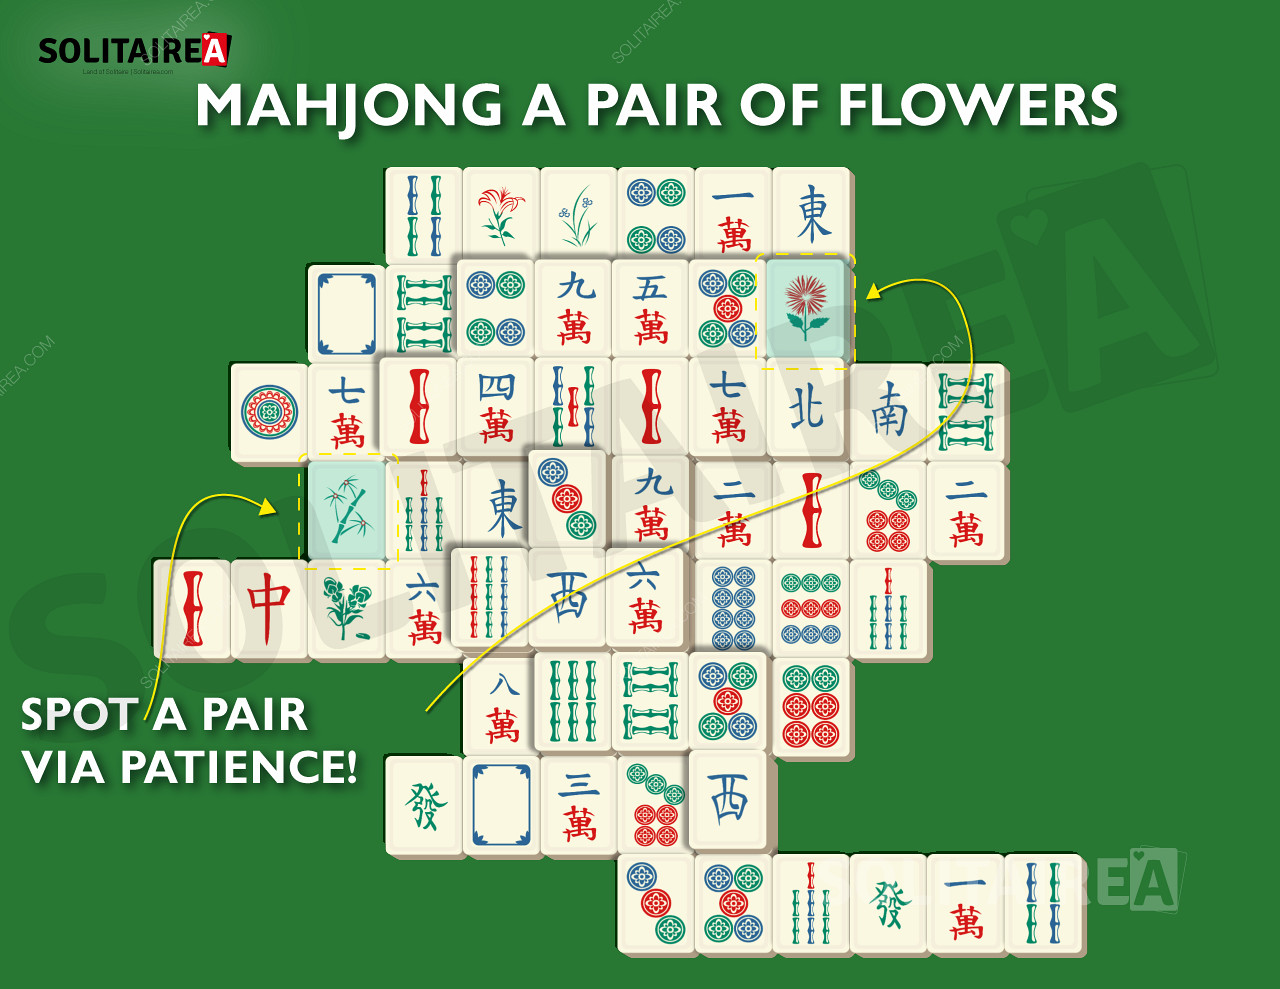 Imagine Mahjong Solitaire care arată o selecție tipică de piese.